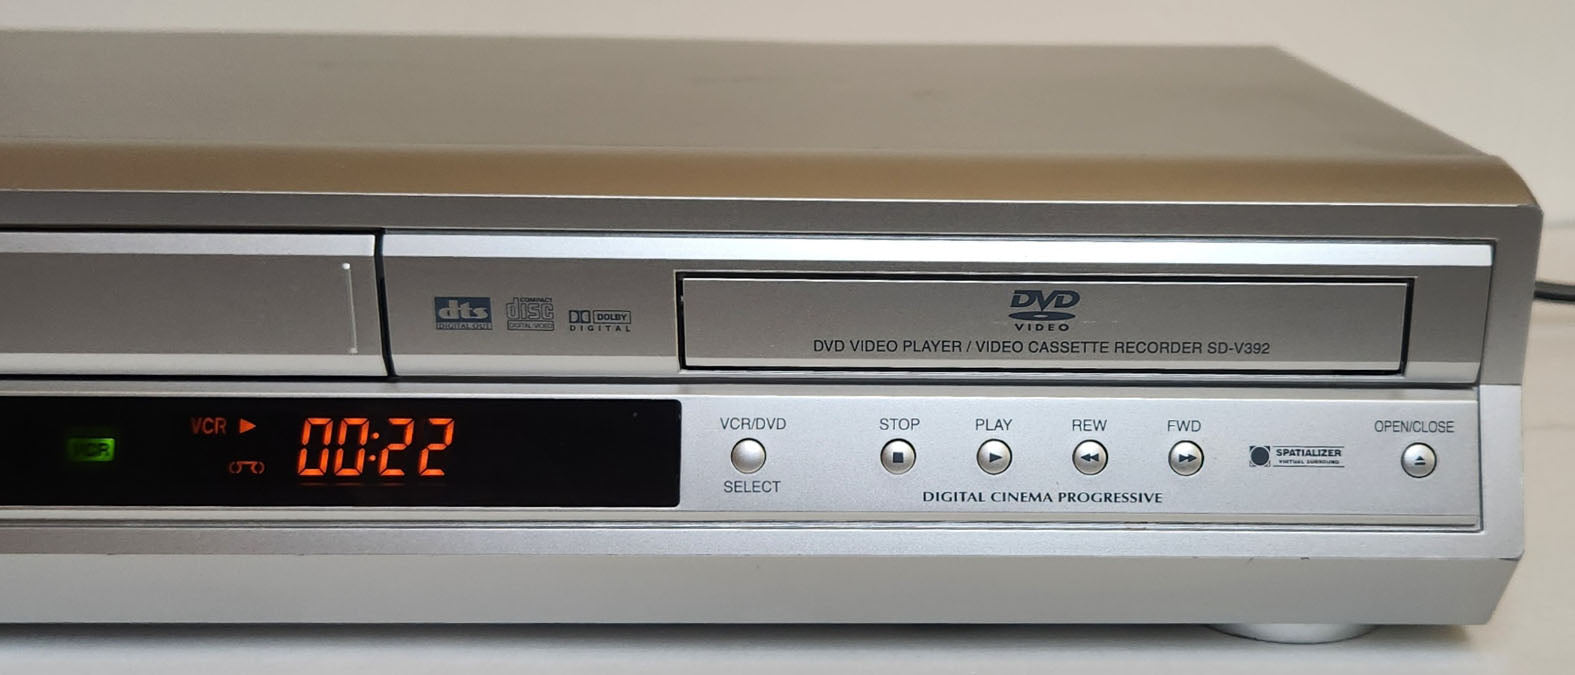 Toshiba SD-V392SU VCR/DVD Player Combo - Right